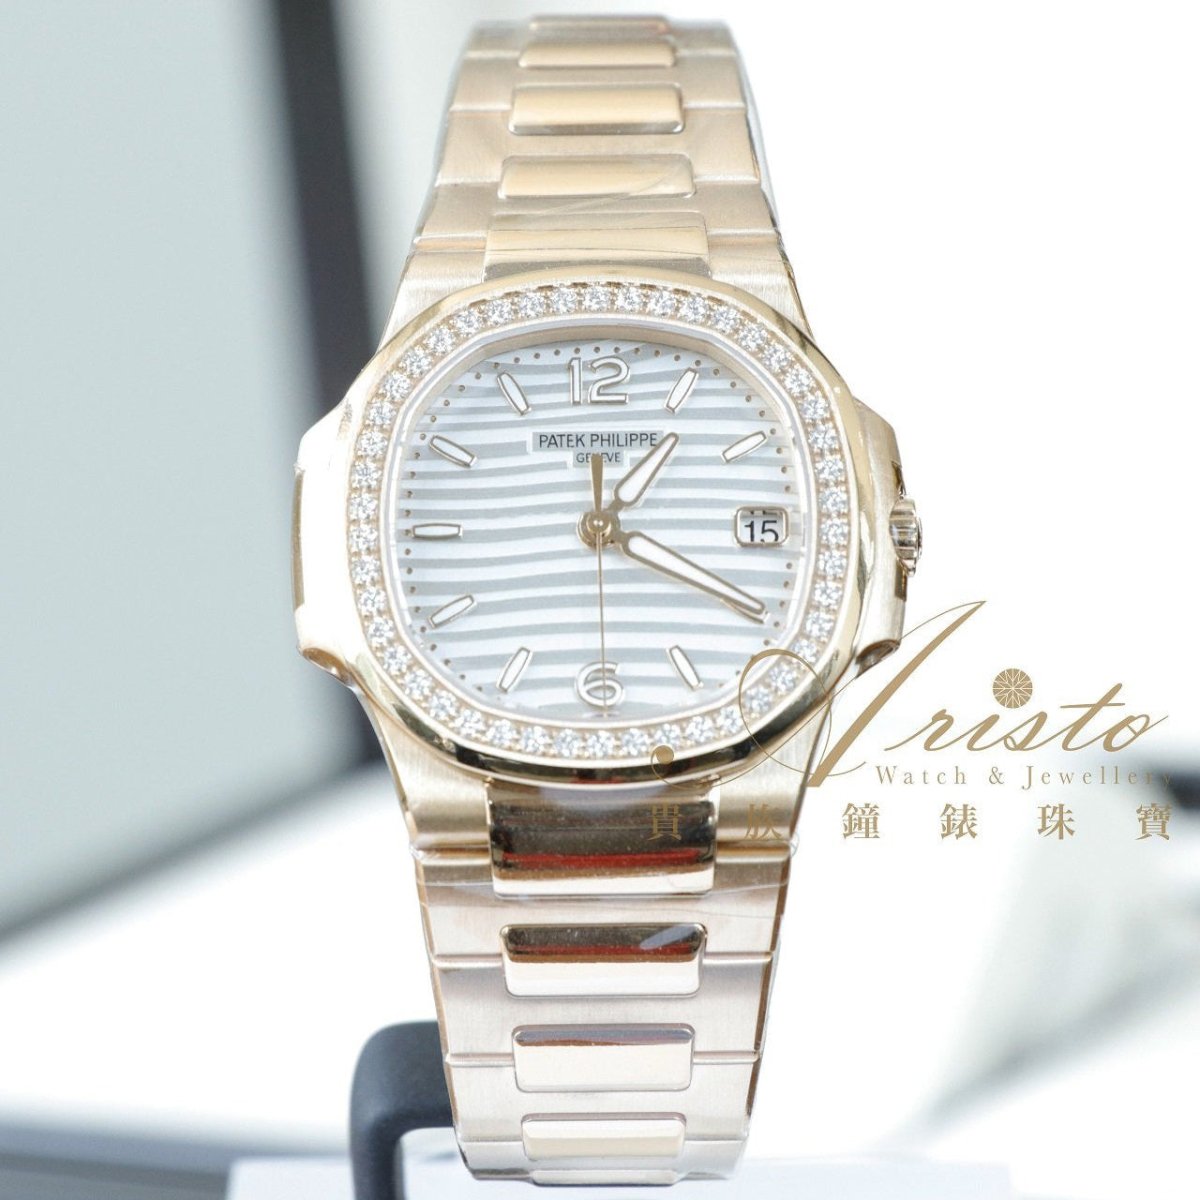 PP 7010/1R-011 Nautilus- Aristo Watch & Jewellery